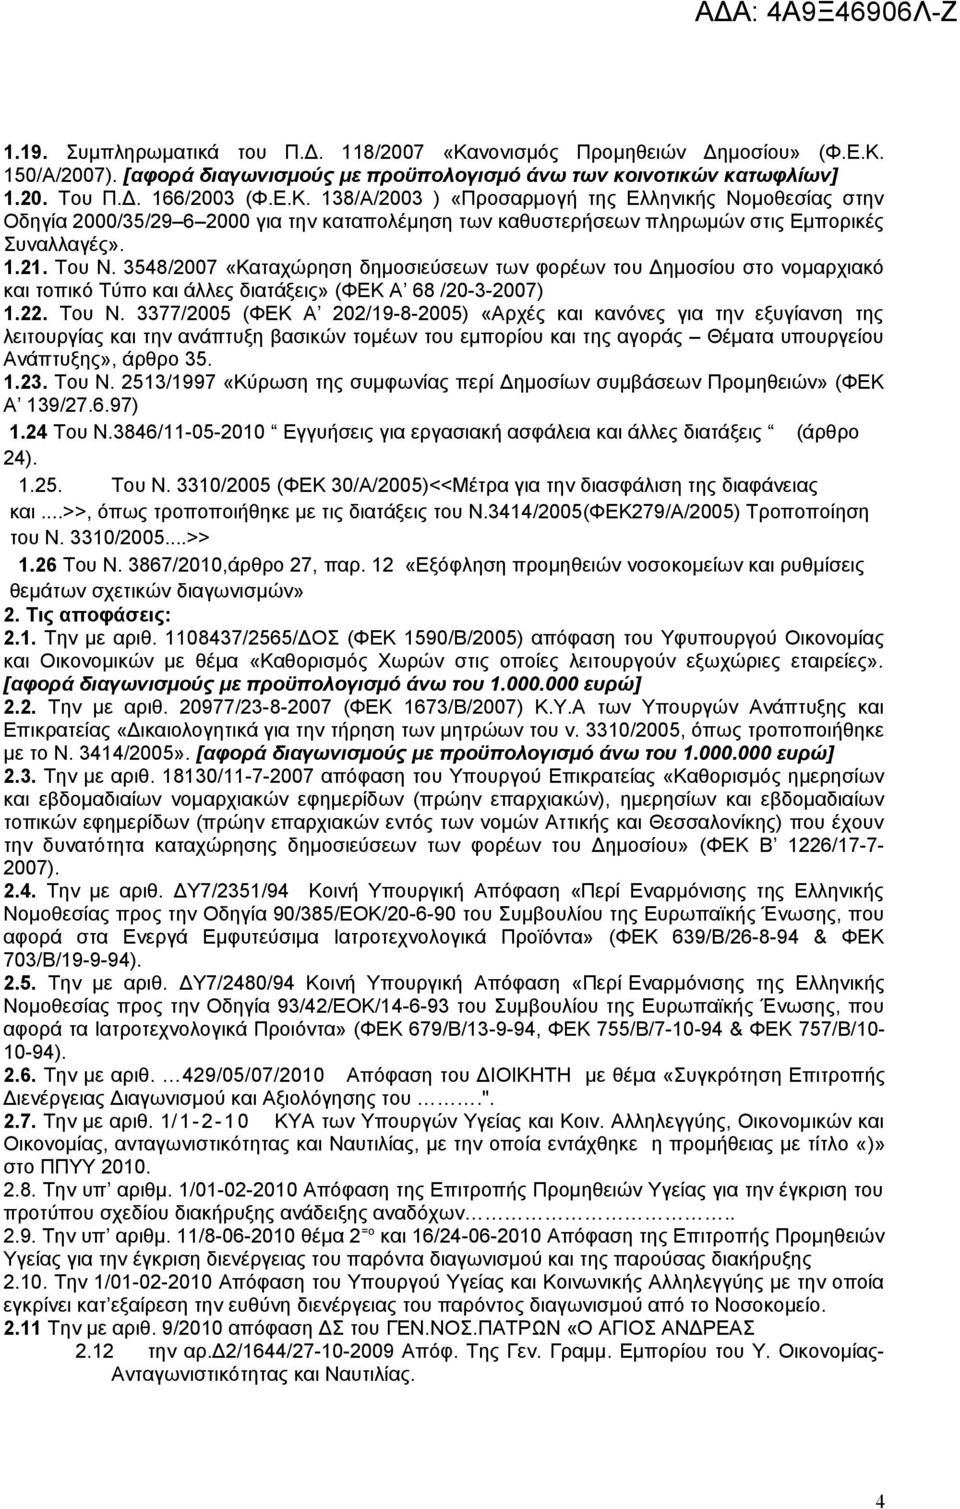 1.23. Του Ν. 2513/1997 «Κύρωση της συμφωνίας περί Δημοσίων συμβάσεων Προμηθειών» (ΦΕΚ Α 139/27.6.97) 1.24 Του Ν.3846/11-05-2010 Εγγυήσεις για εργασιακή ασφάλεια και άλλες διατάξεις (άρθρο 24). 1.25. Του Ν. 3310/2005 (ΦΕΚ 30/Α/2005)<<Μέτρα για την διασφάλιση της διαφάνειας και.